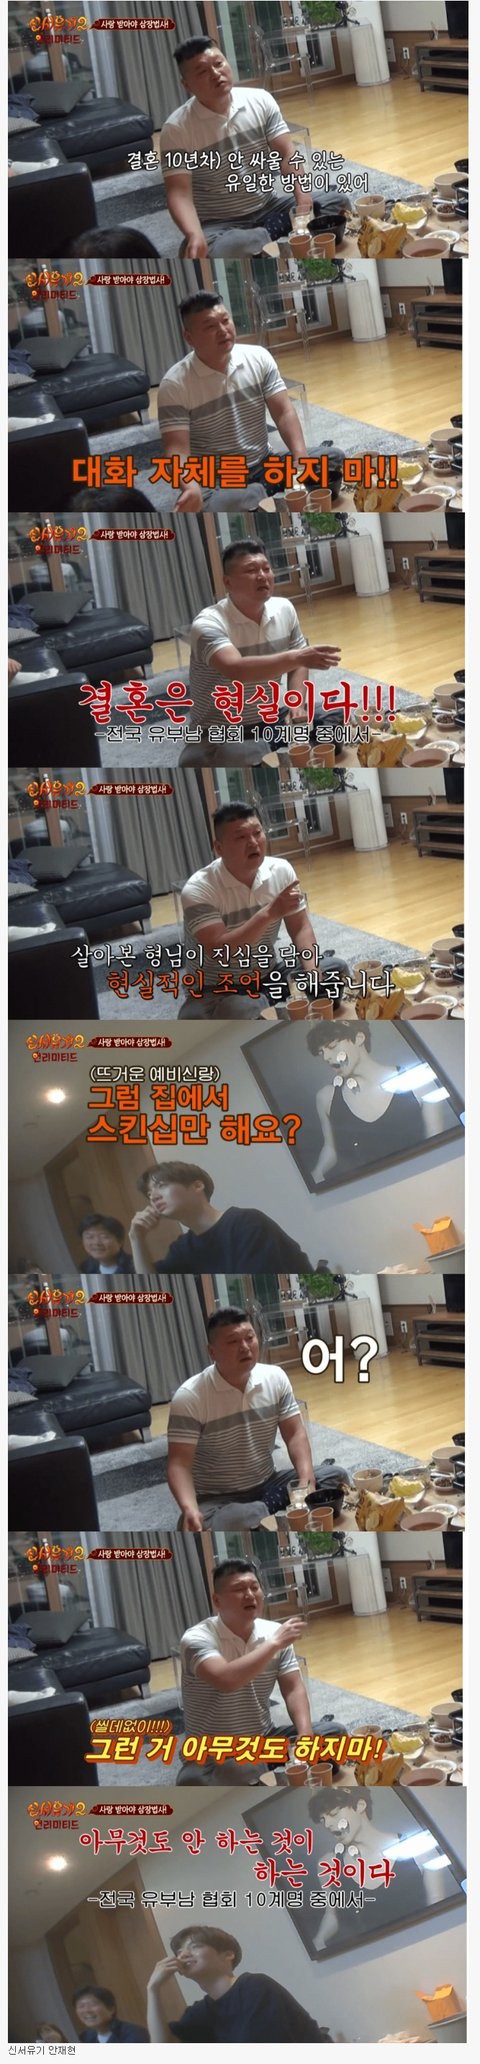 Lời Kang Ho Dong khuyên Ahn Jae Hyun về hôn nhân đột ngột hot trở lại, nghe xong chỉ thấy xót xa cho Goo Hye Sun - Ảnh 1.